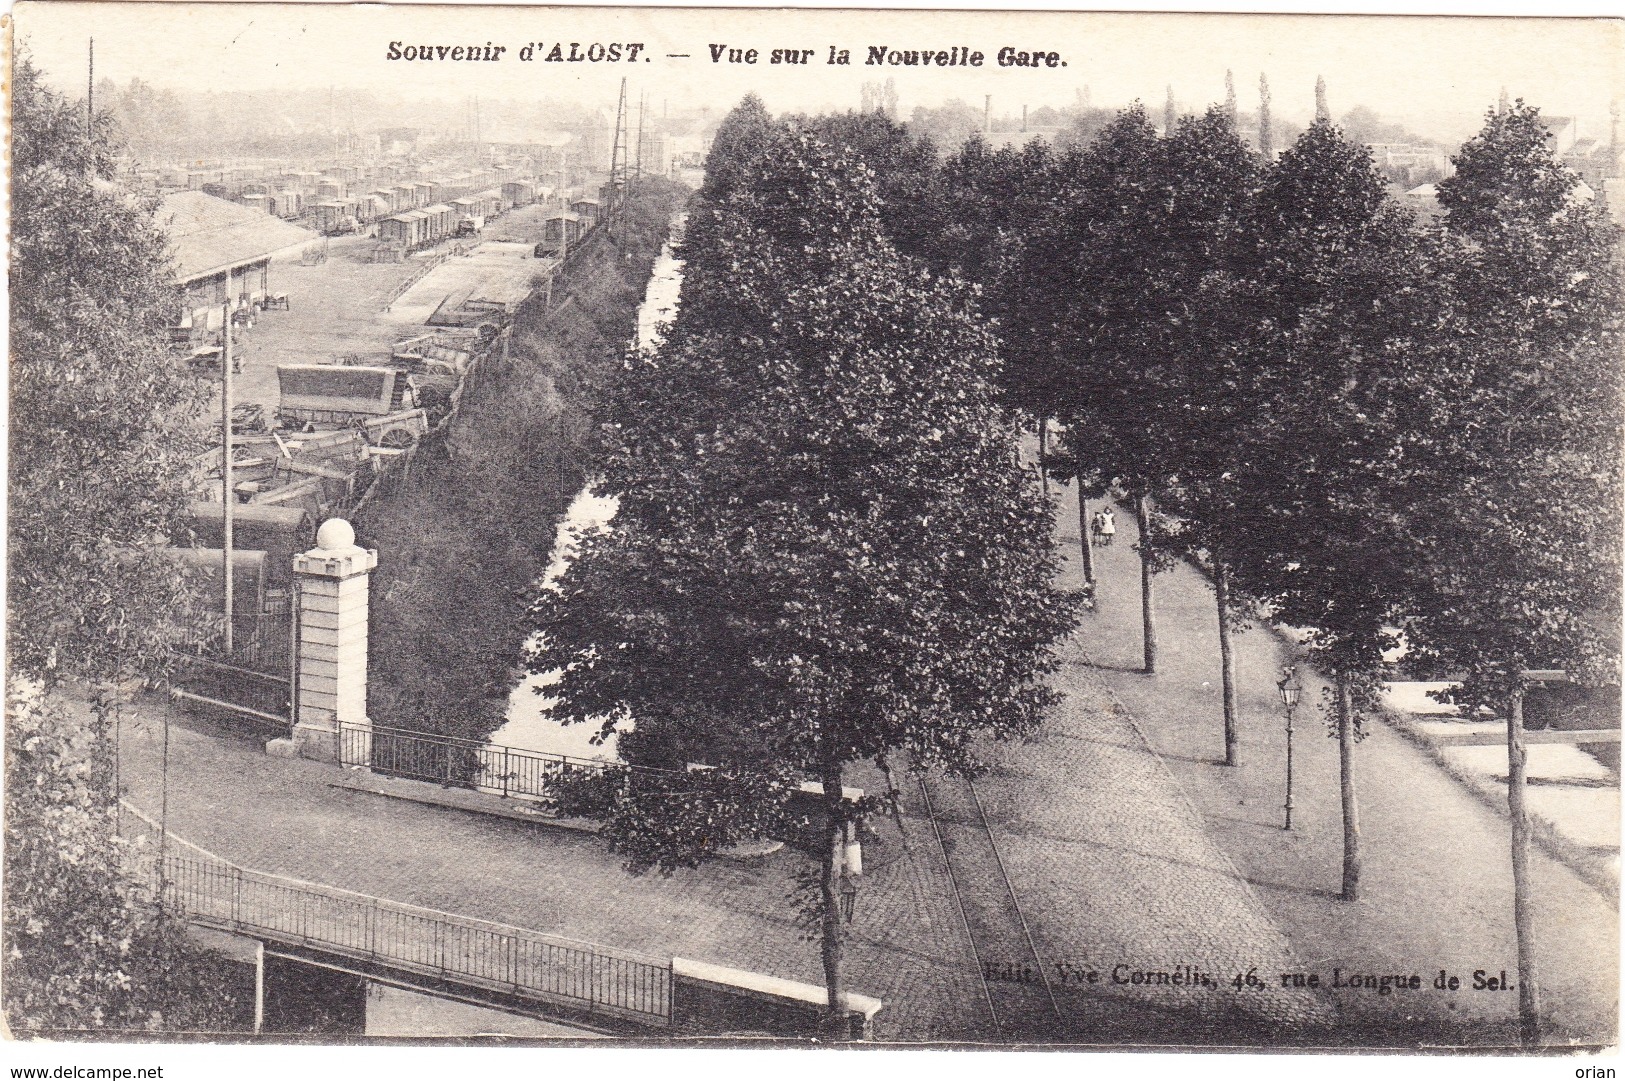 AALST ALOST 1911 Souvenir Zicht Op Het Nieuwe Station / Nouvelle Gare - Uitg. Weduwe Cornelis - Aalst